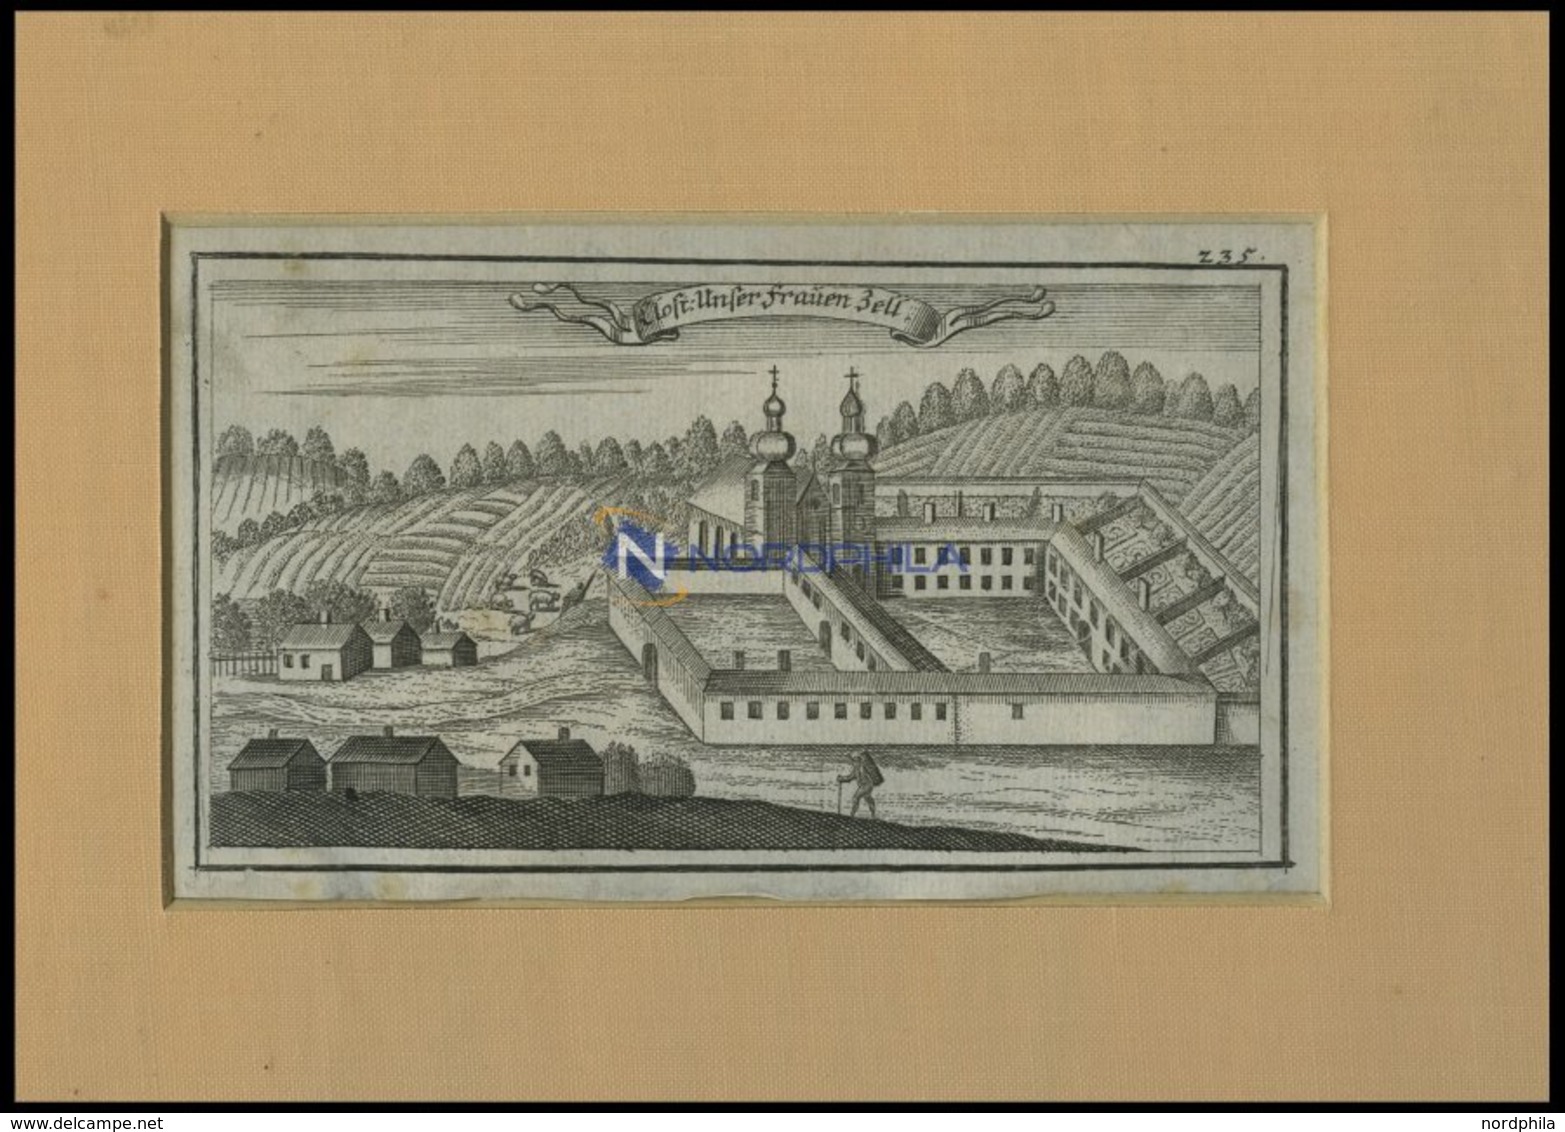 BRENNBERG: Kloster Frauenzell, Kupferstich Von Ertl, 1687 - Litografía